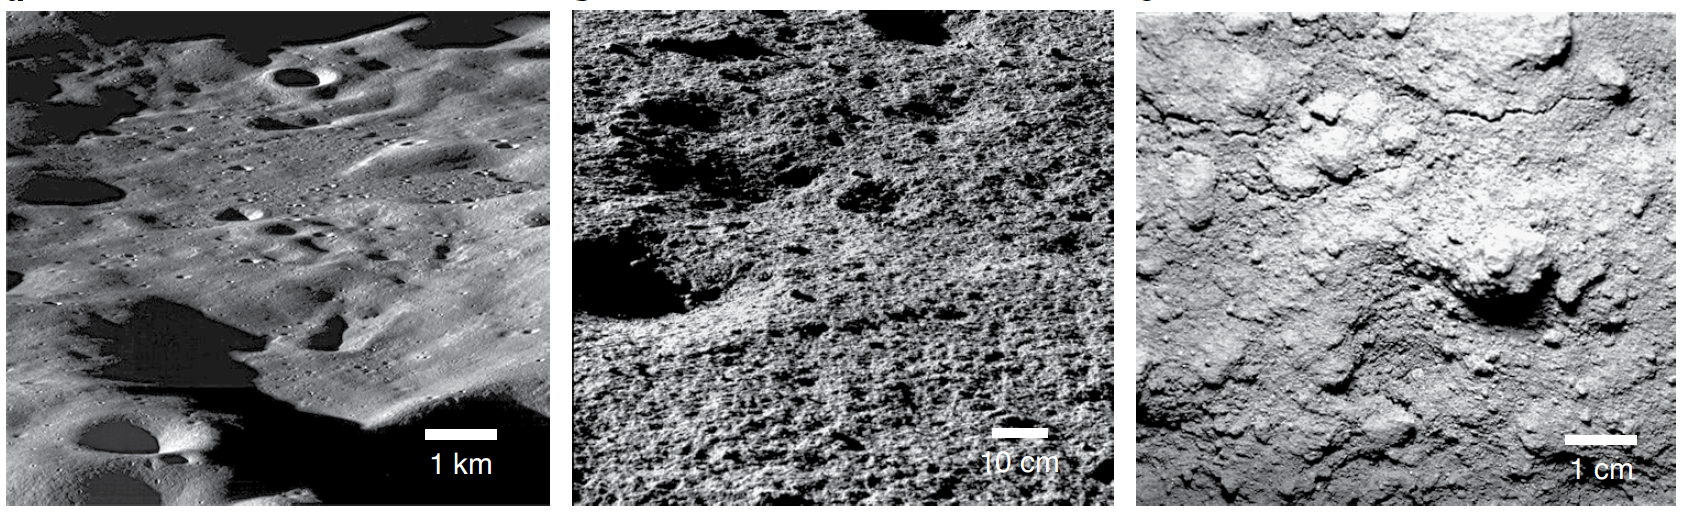 Exemplos de armadilhas frias da Lua. Crédito: . O. Hayne et al., 2020/NASA